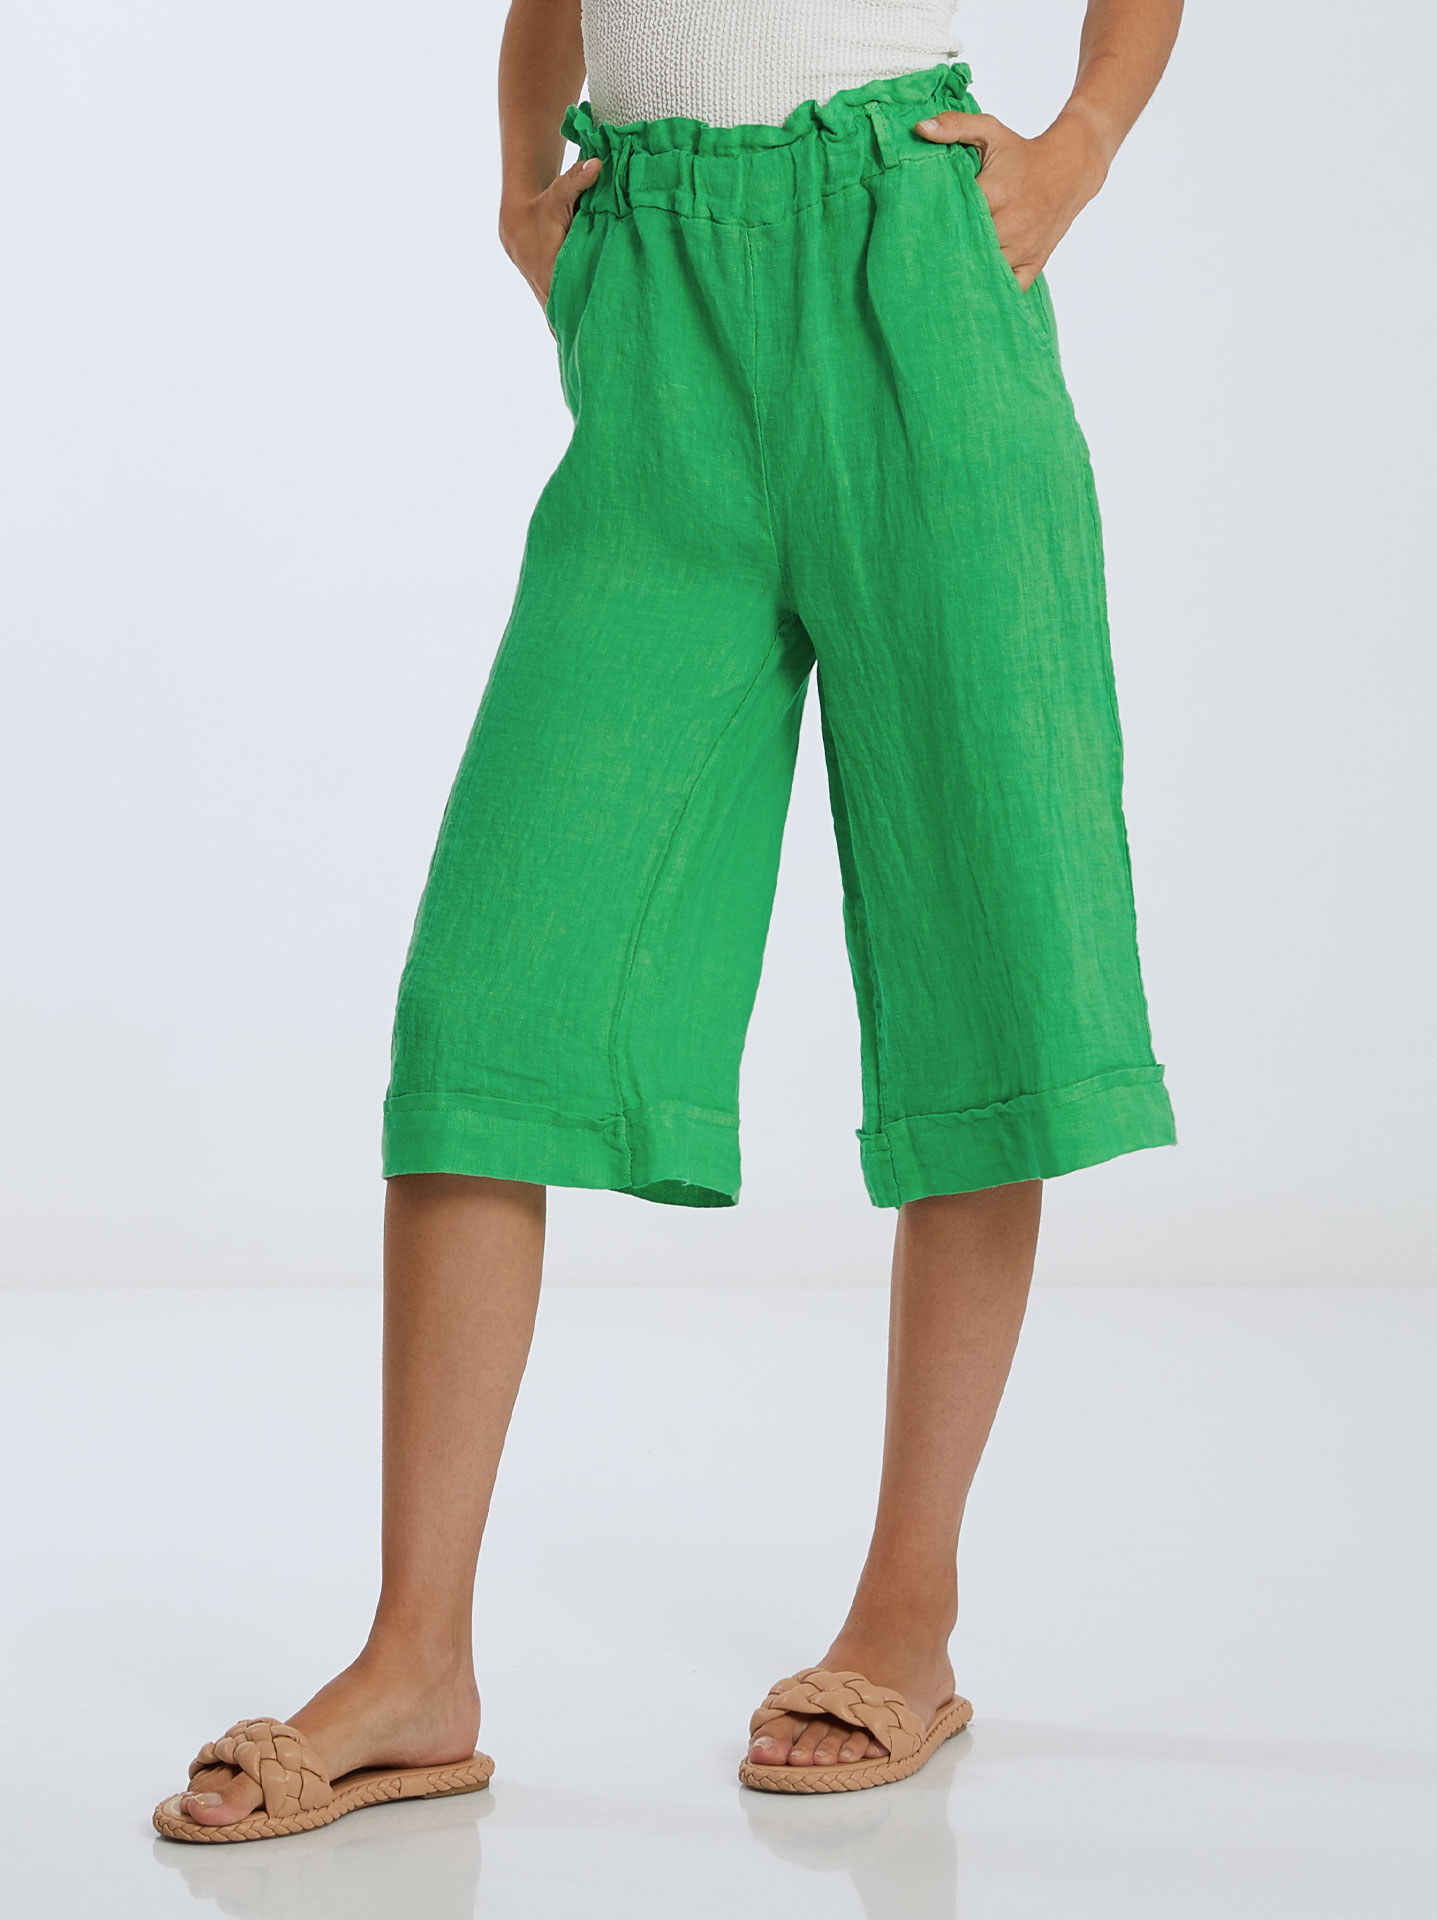 Linen capri trousers in light green, 9.99€